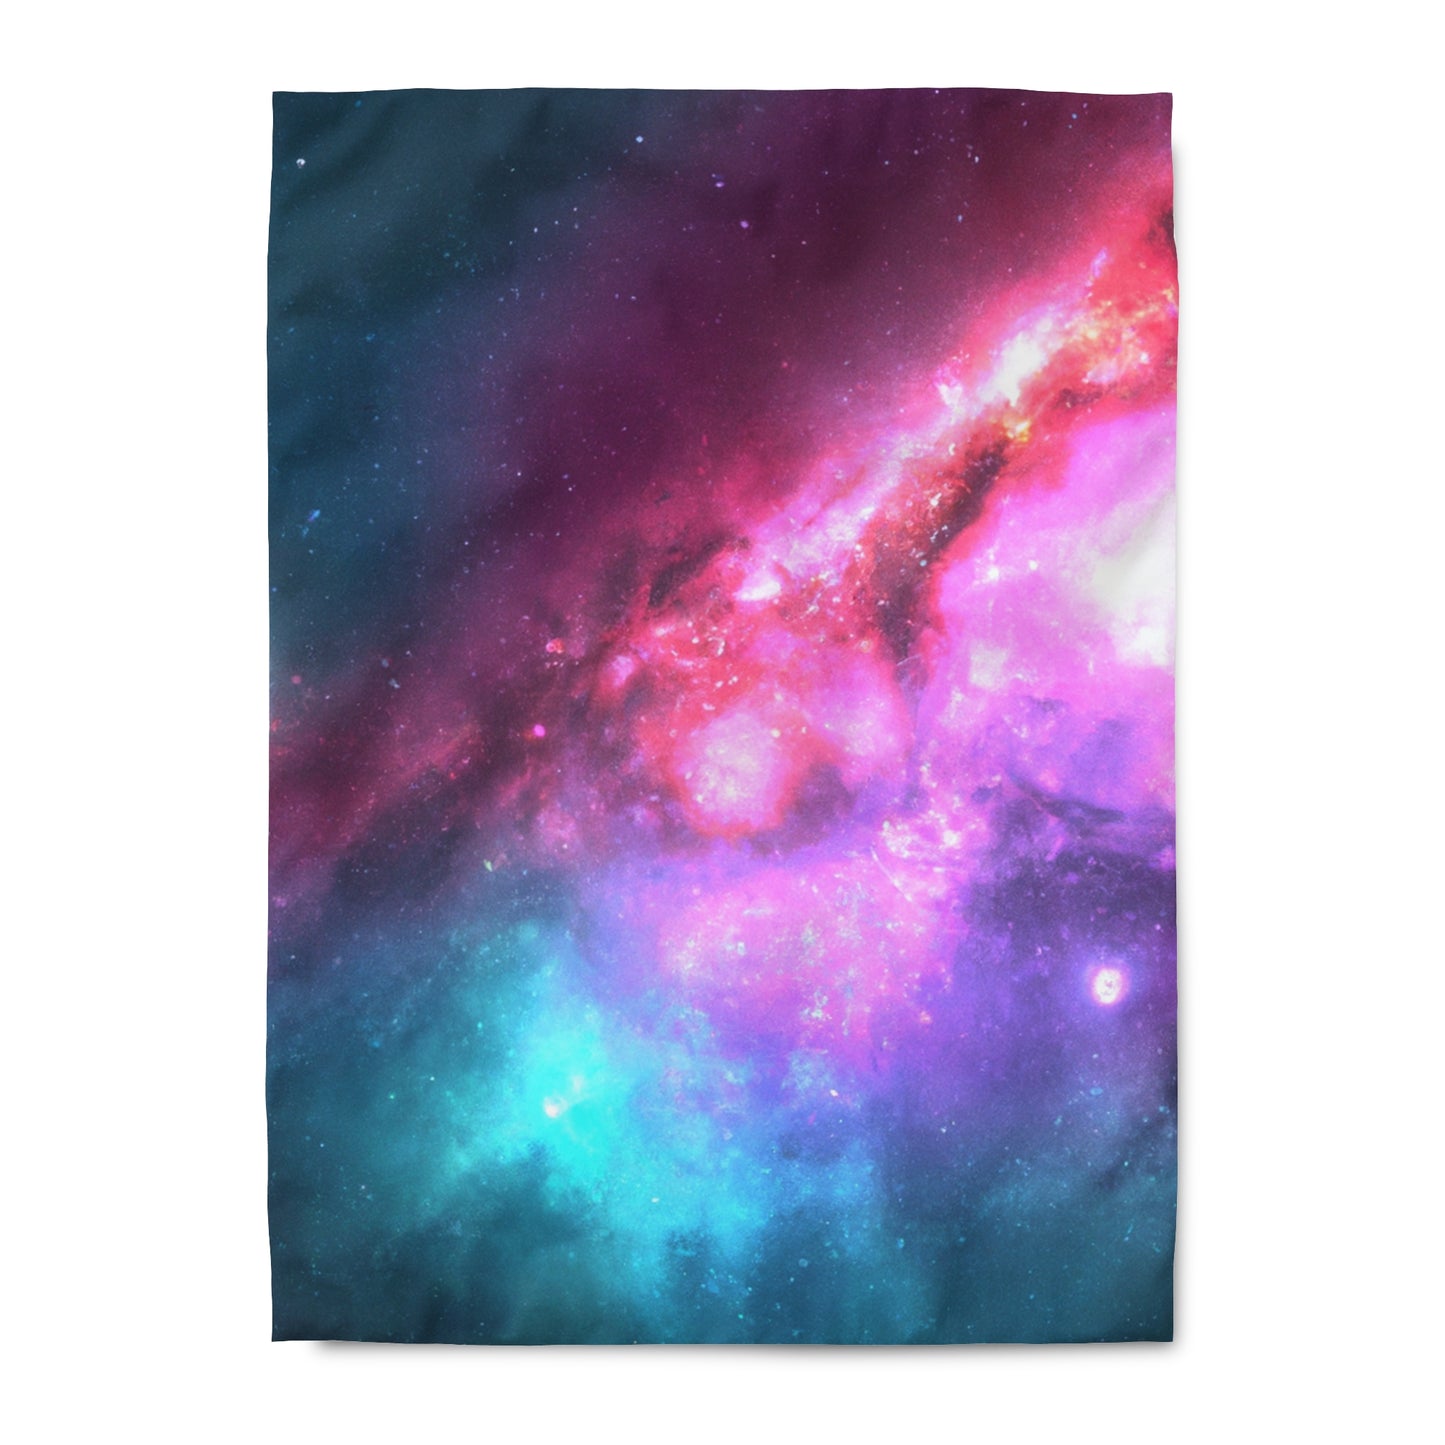 Lucille's Starry Slumber - Astronomy Duvet Bed Cover